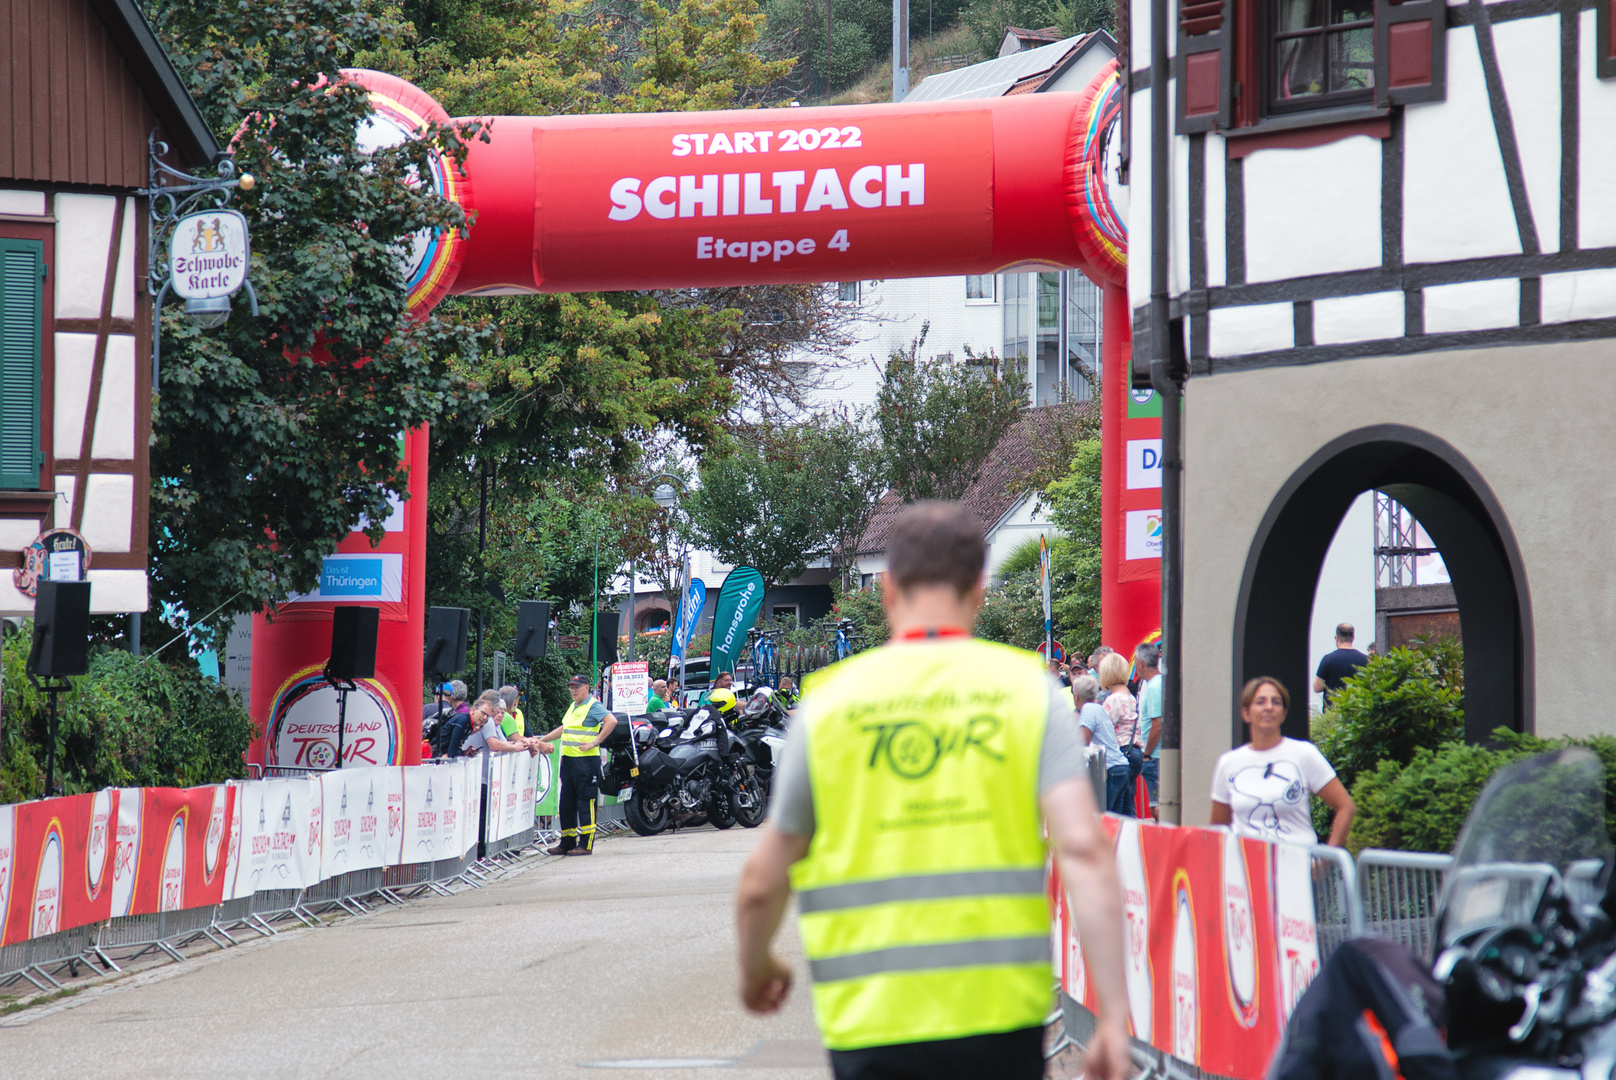 Etappe 4 von Schiltach nach Stuttgart, 188 km